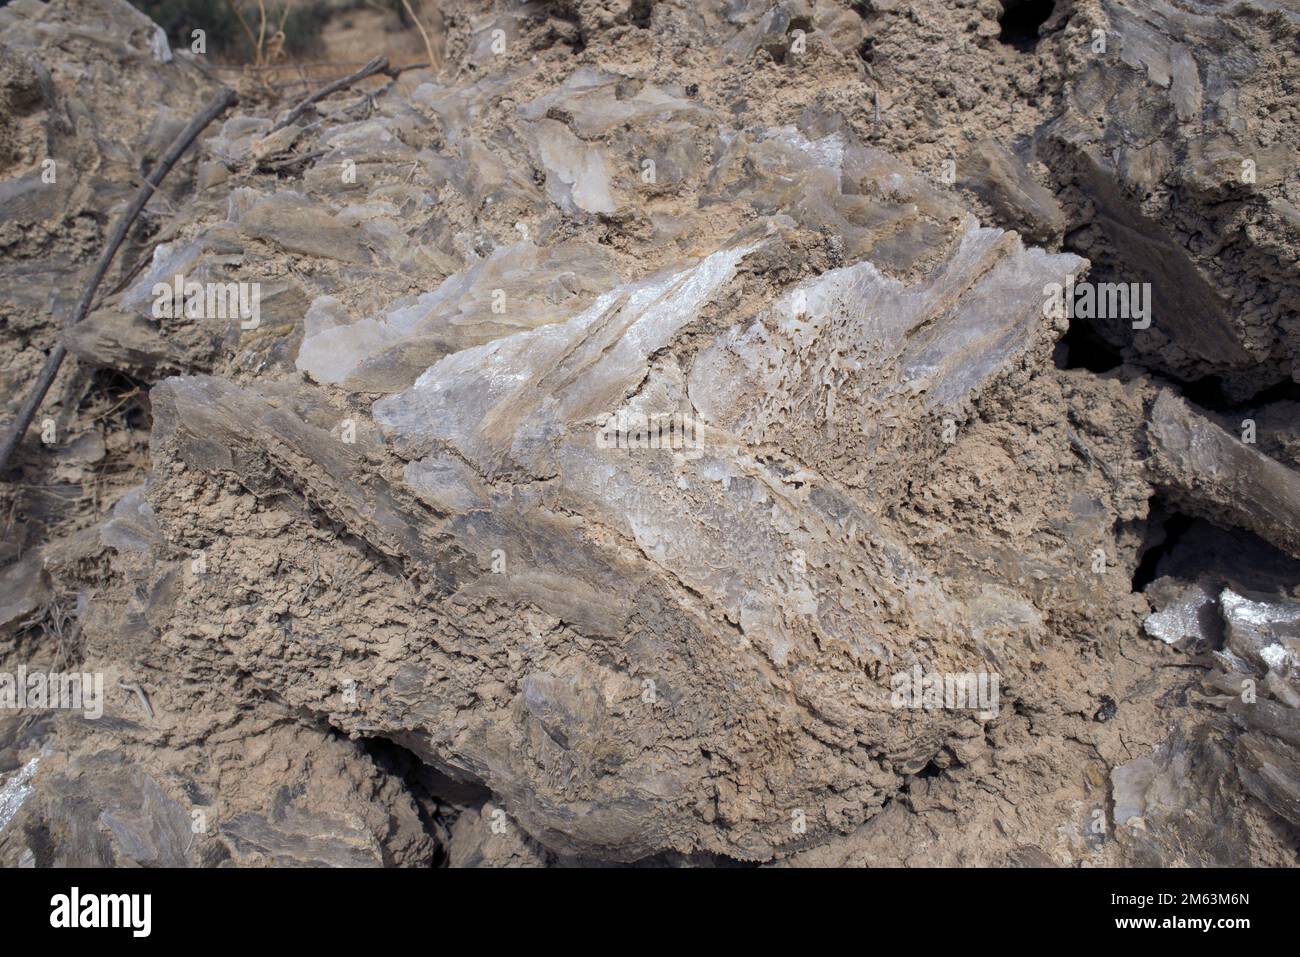 Gemelo de punta de flecha de yeso. El yeso es un mineral dihidrato de sulfato de calcio. Esta muestra proviene de Sorbas, Almería, Andalucía, España. Foto de stock